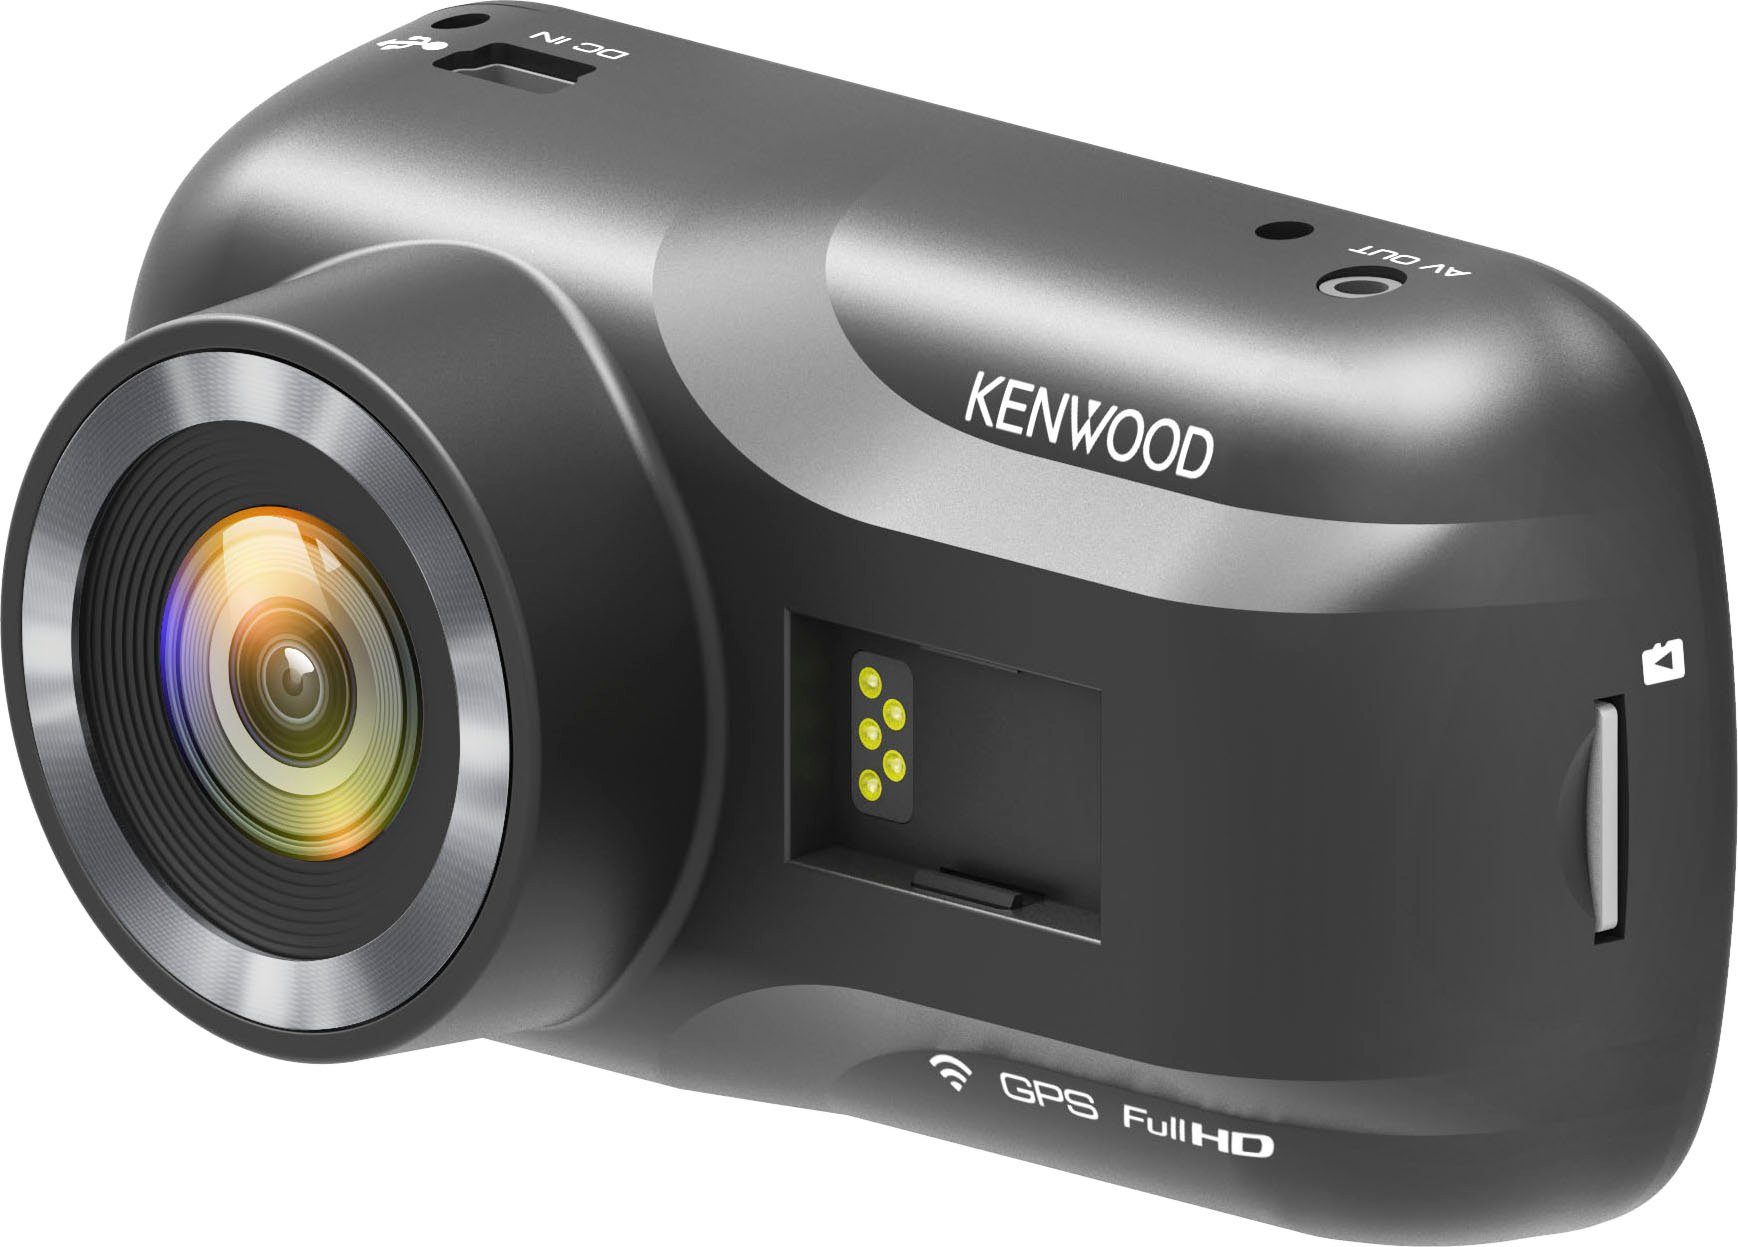 (Wi-Fi) Kenwood (Full Dashcam DRV-A301W WLAN HD,